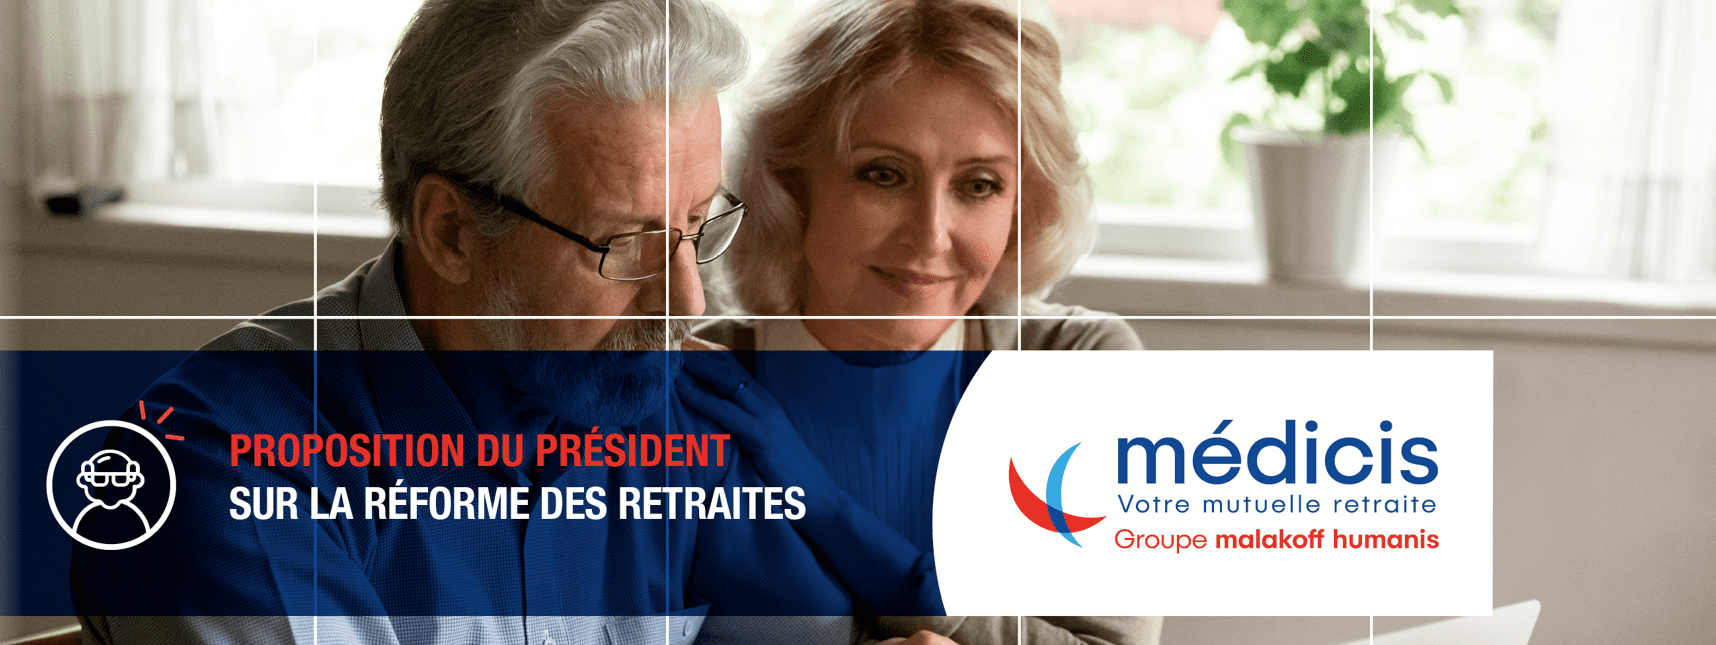 Nouvelle réforme des retraites en 2022 : que prévoit Emmanuel macron ?